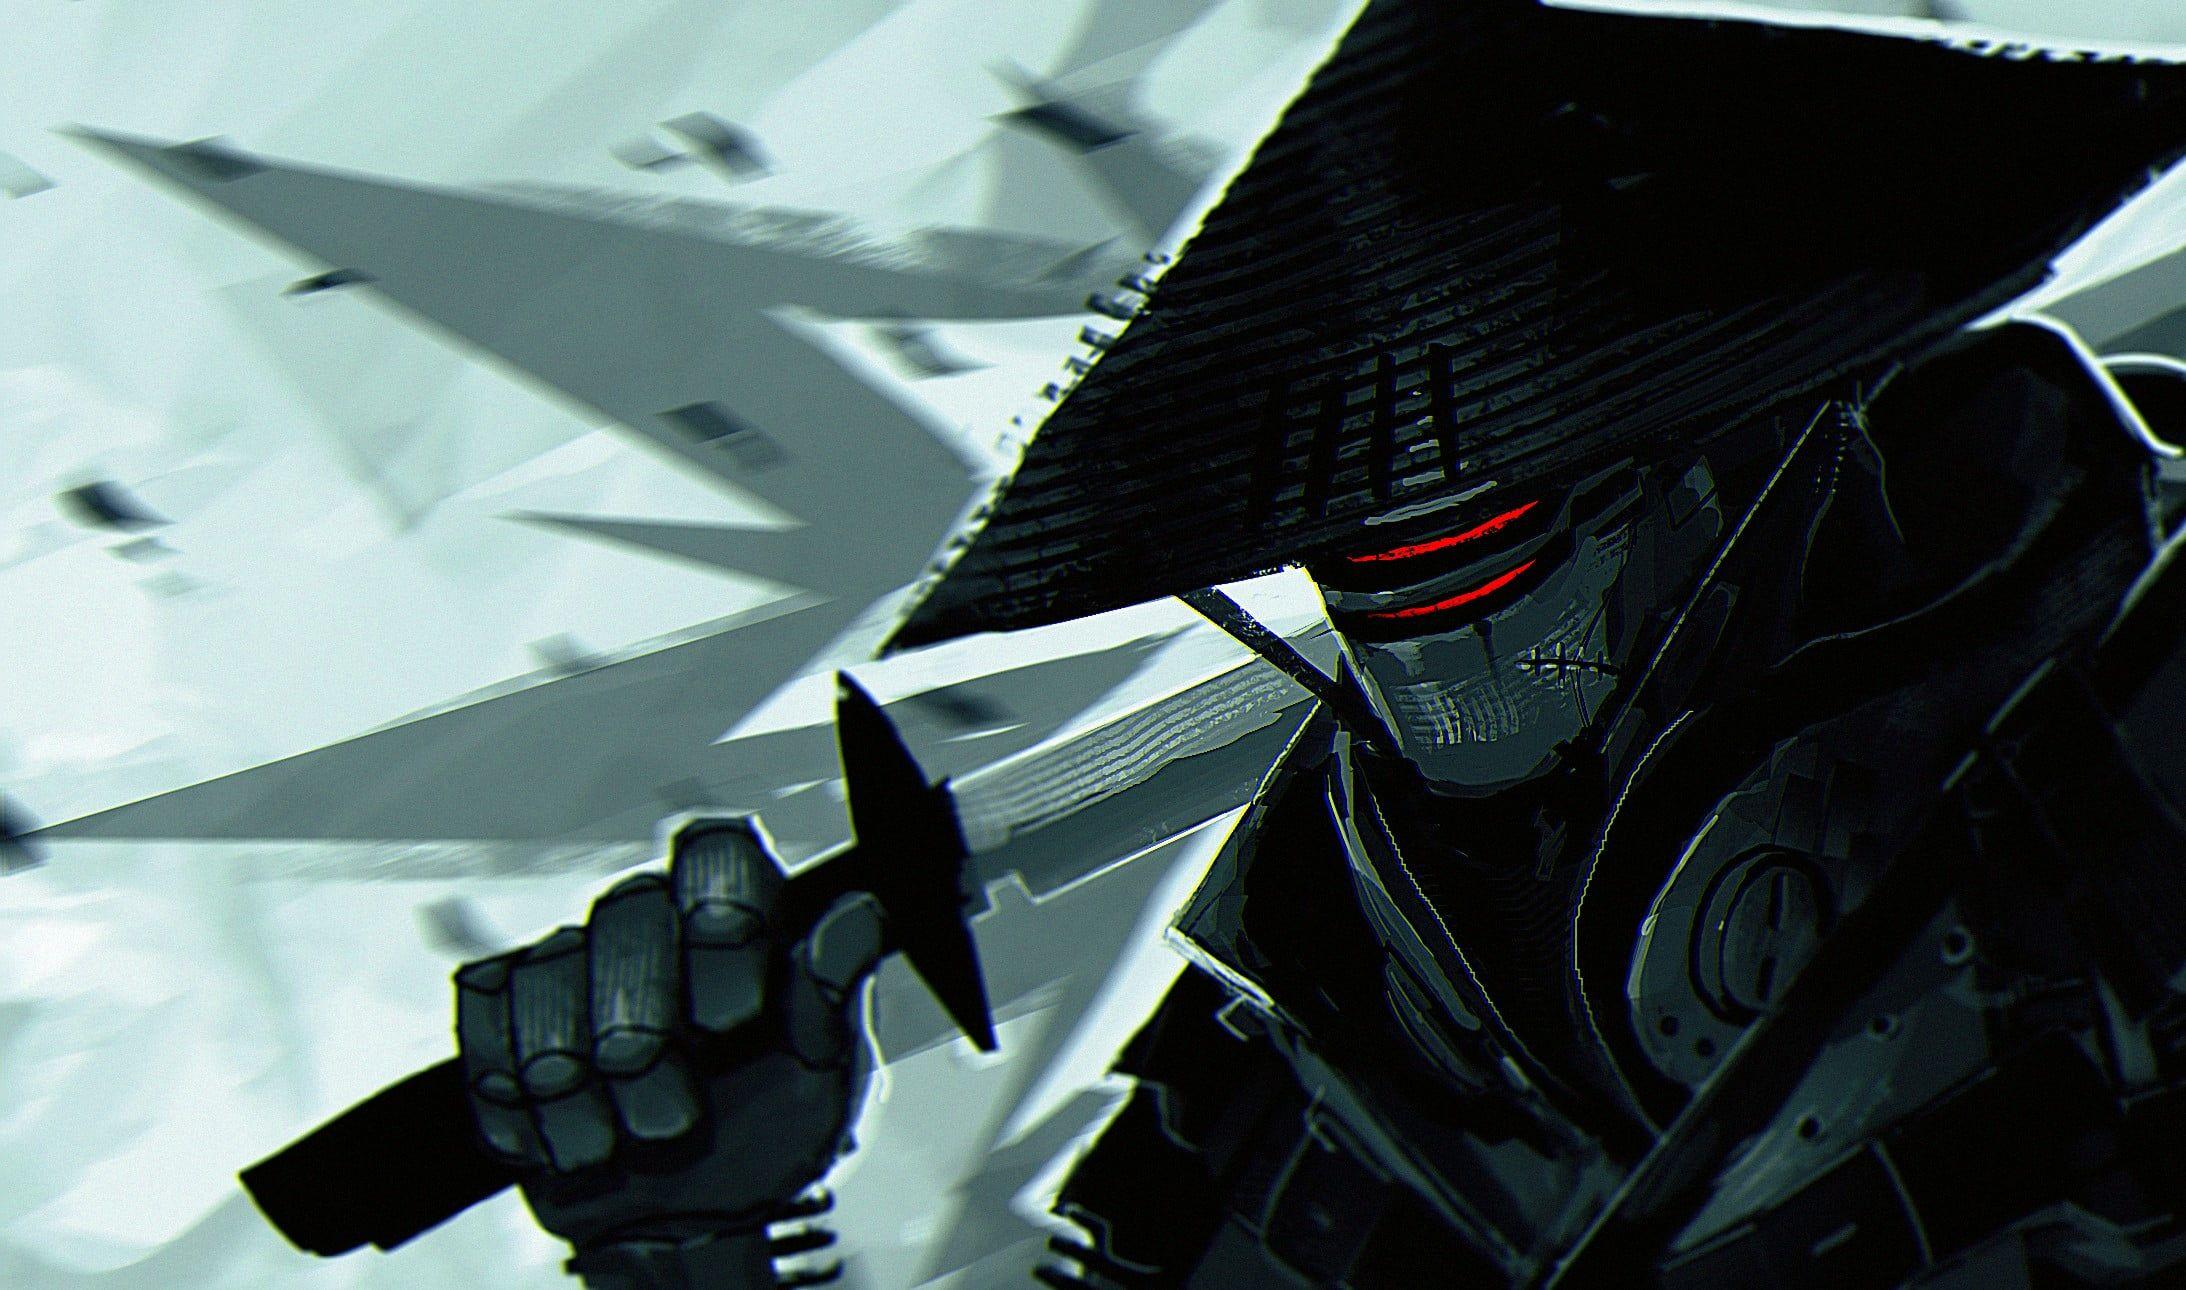 Samurai illustration, ninja robots, Rives Alexis, digital art, sword